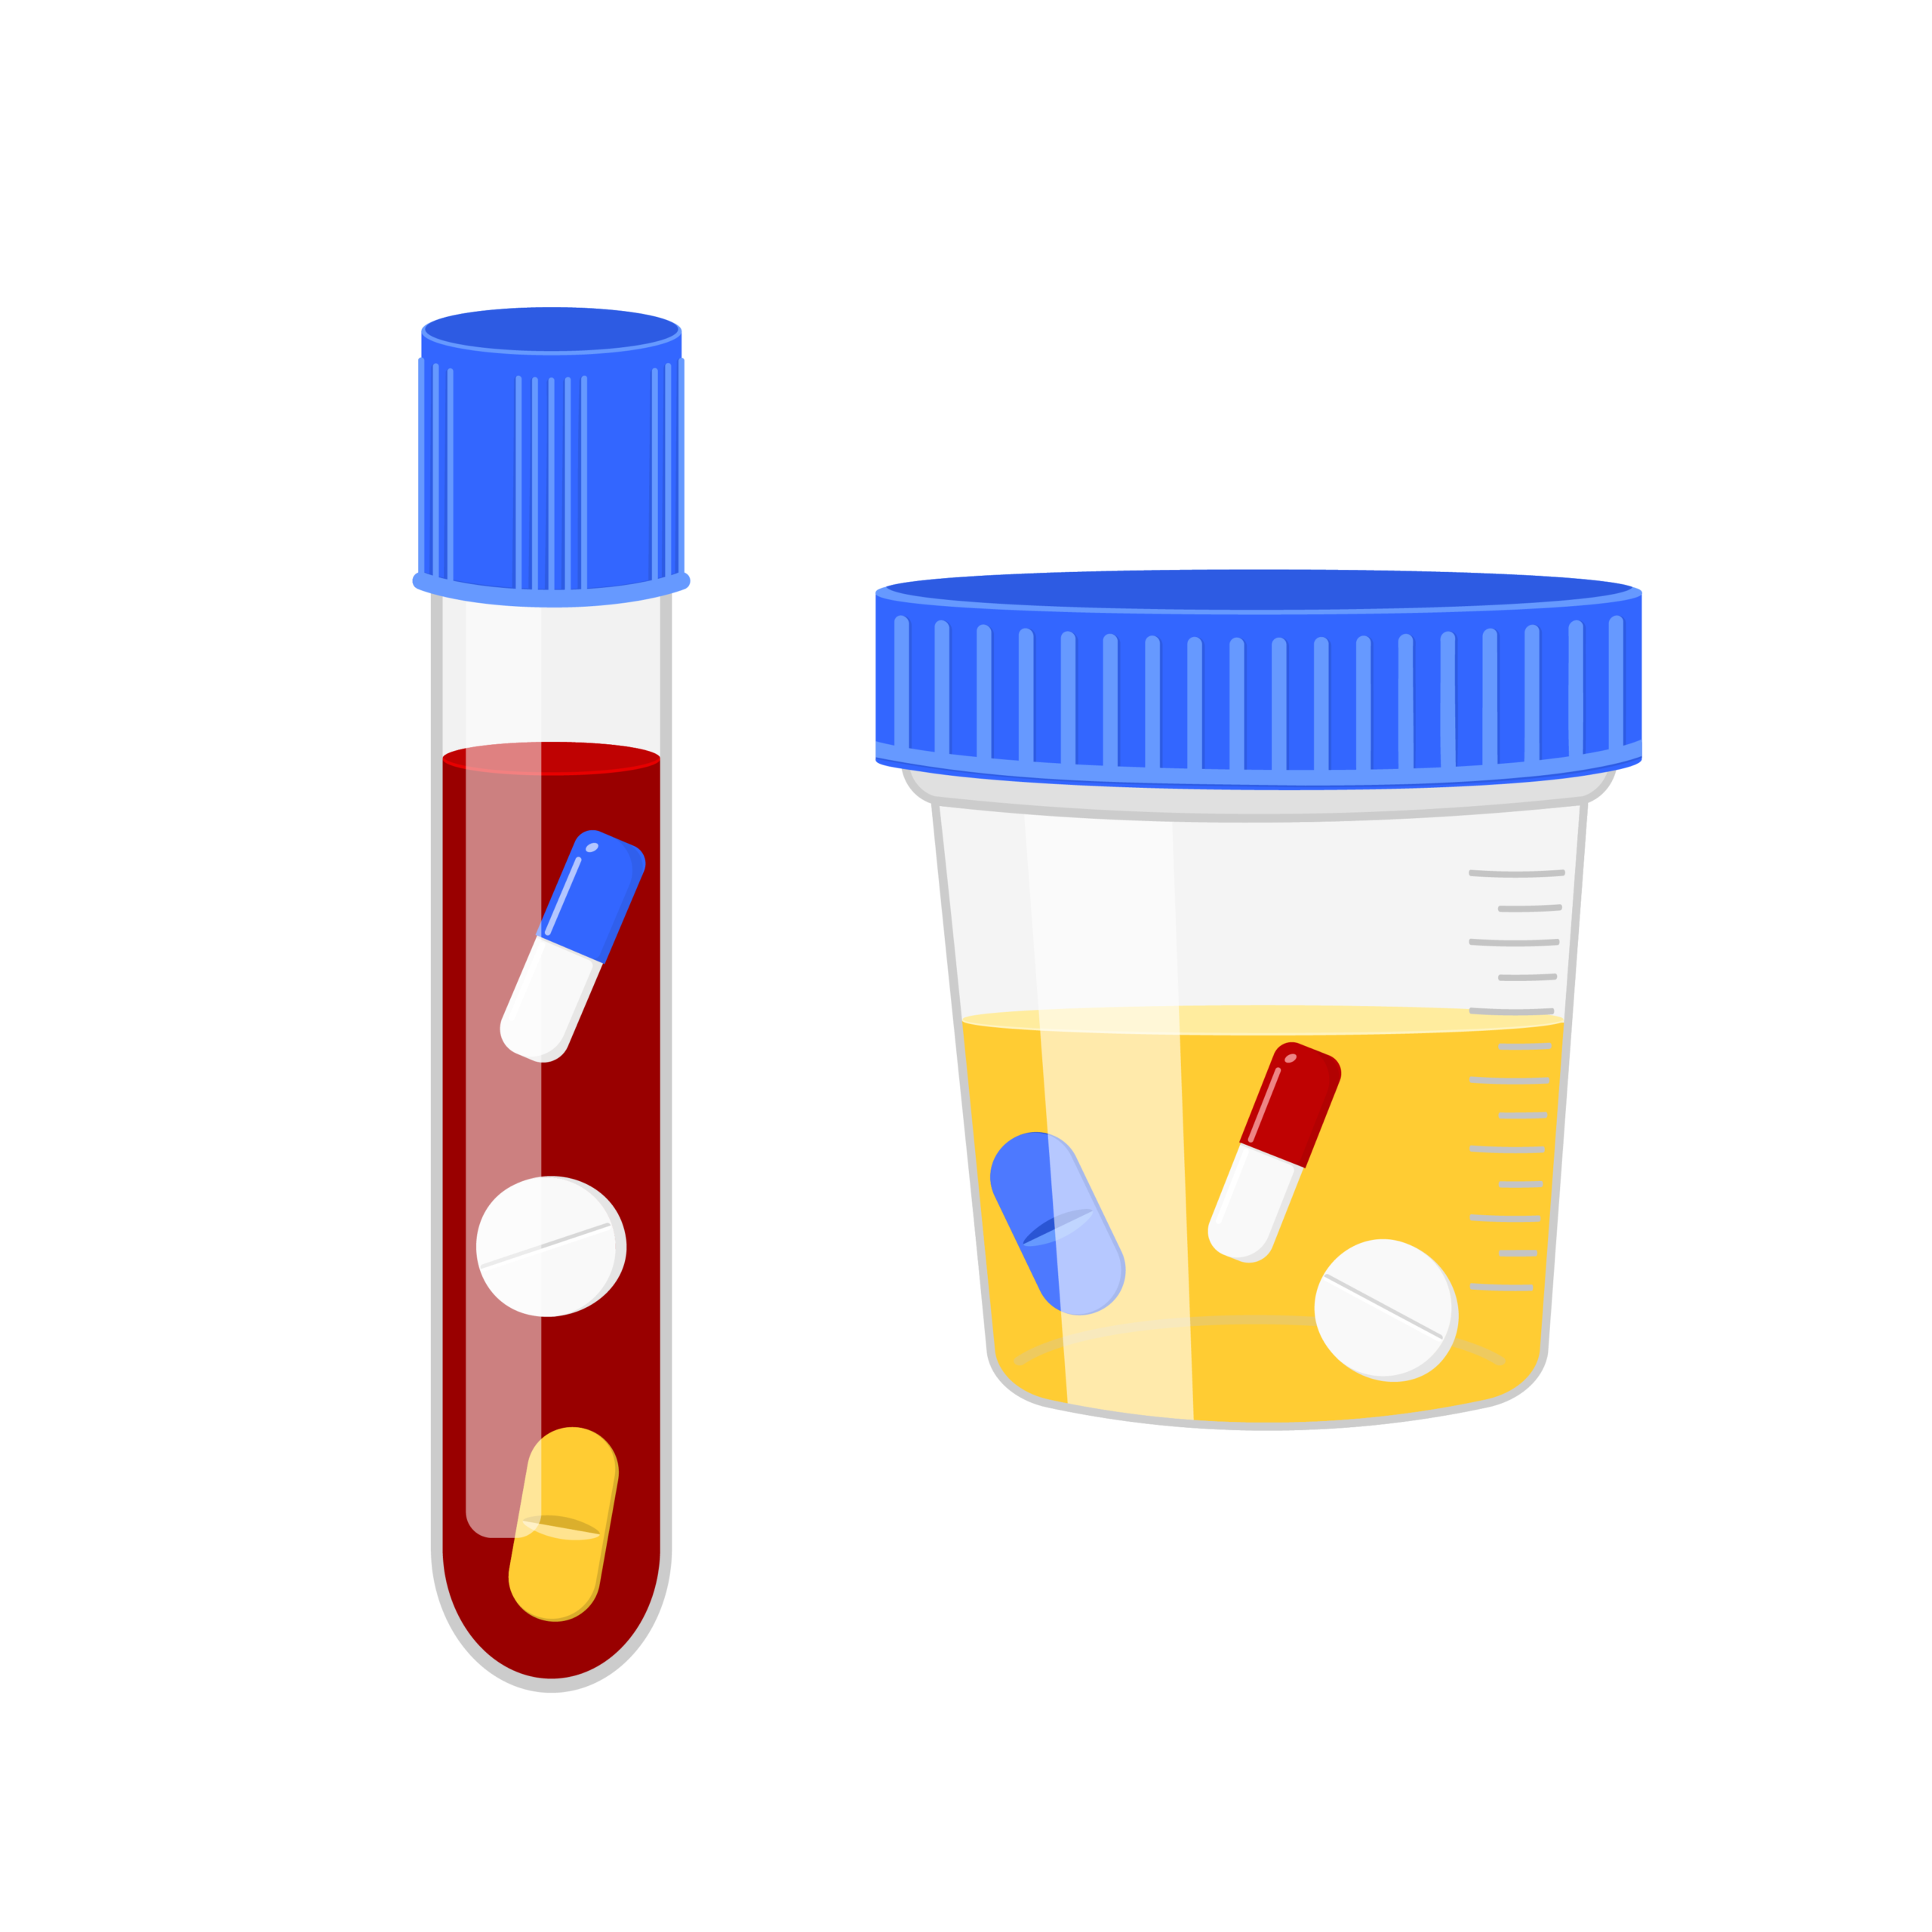 Medications in drug test samples